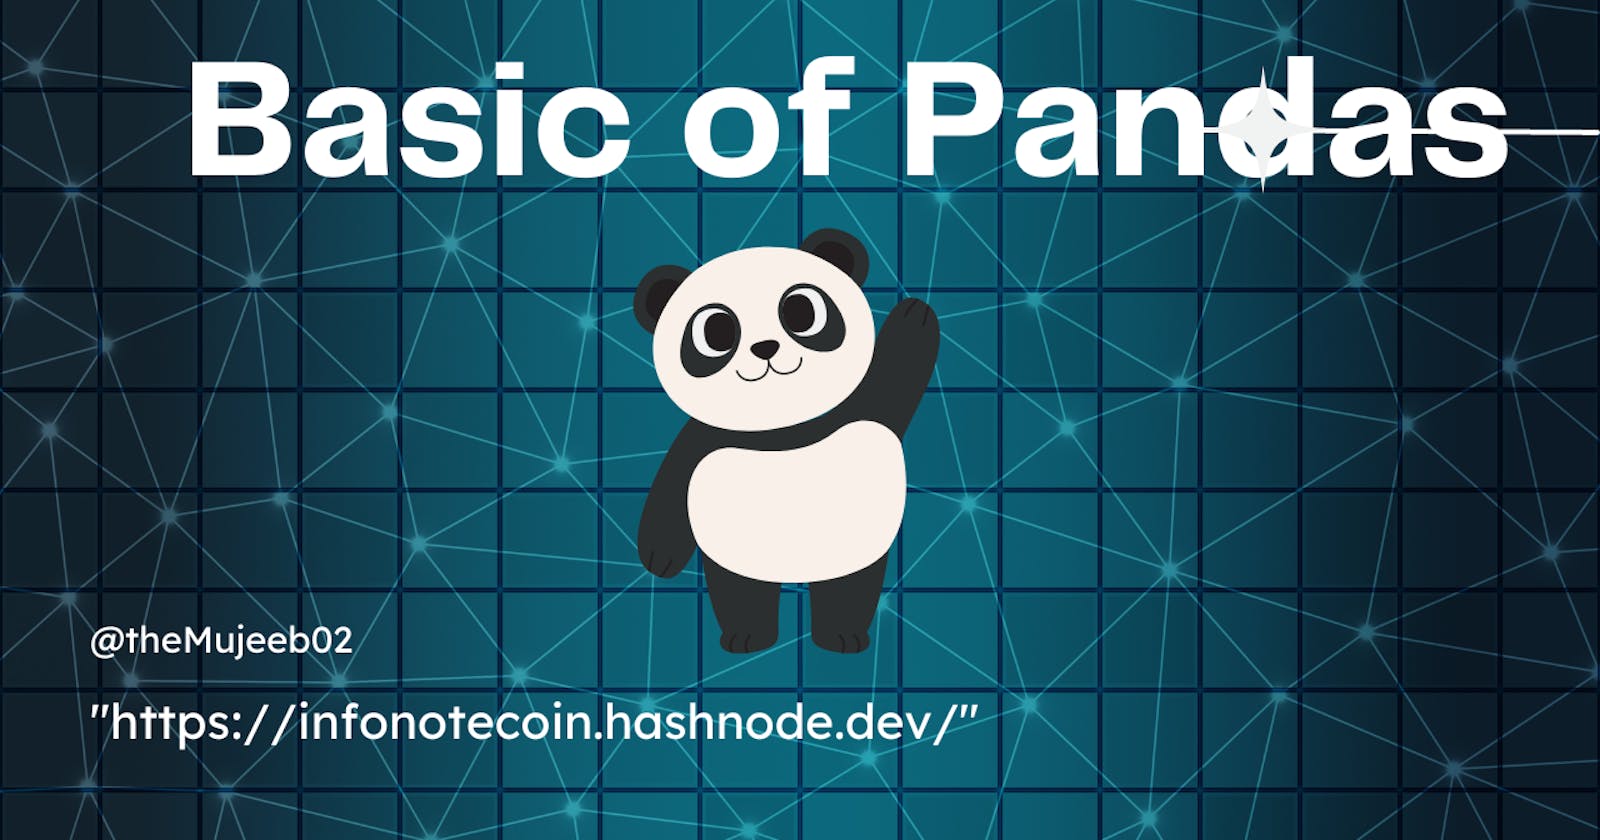 Basic of Pandas